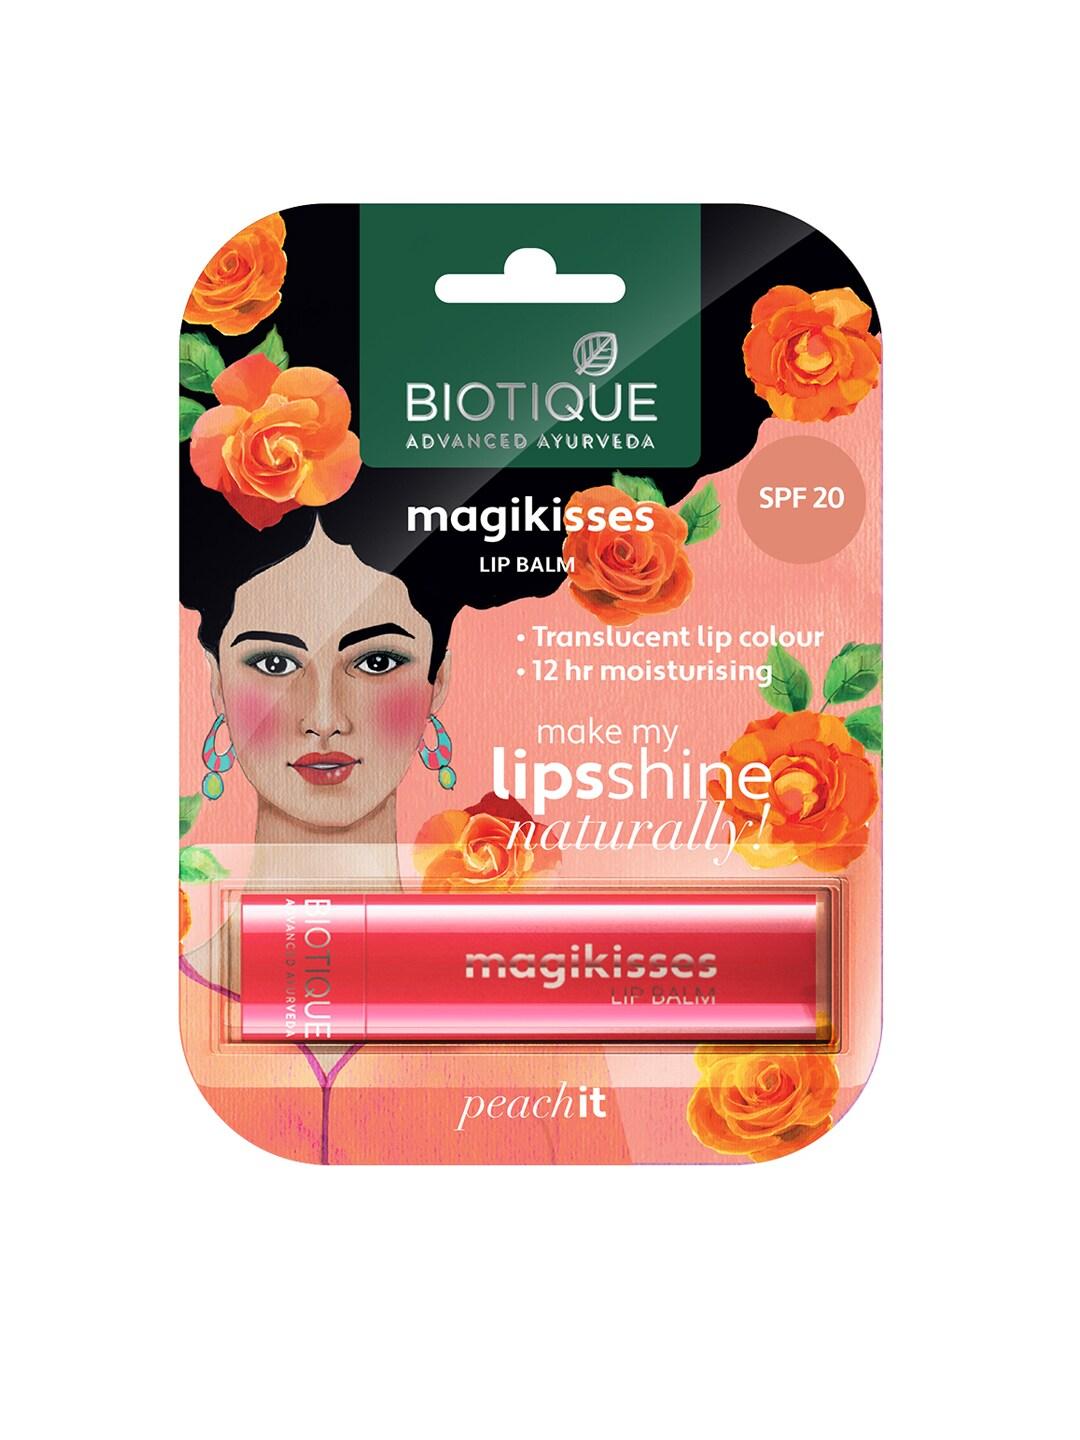 Biotique Magikisses SPF 20 Moisturising Translucent Lip Balm - Peach It